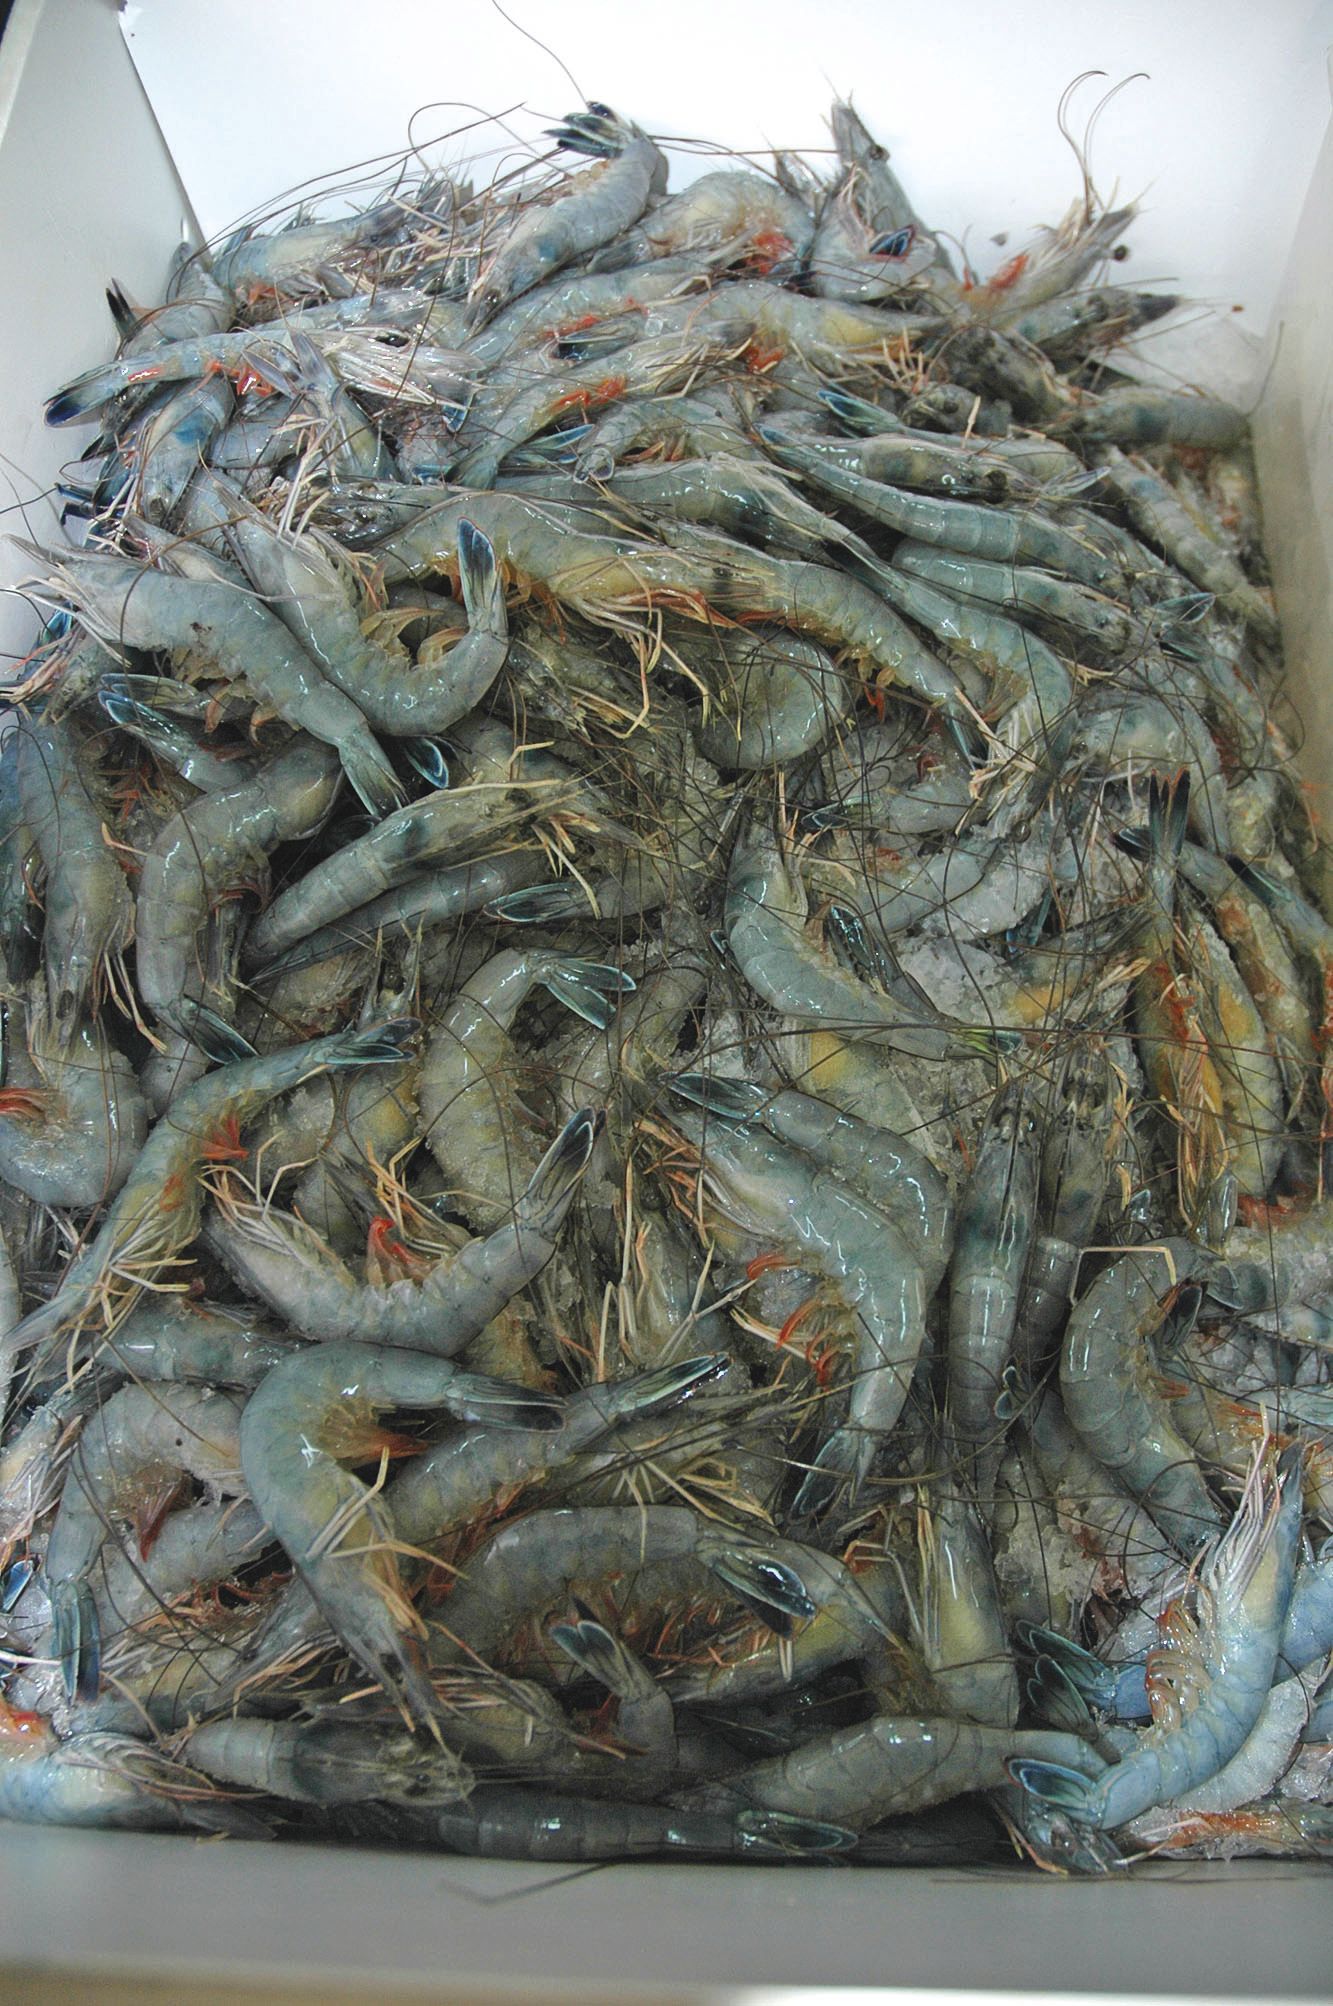 Neuf salariés de Sodacal, qui produit plus de 300 tonnes de crevettes par an, ont dérobé des centaines de kilos de crustacés en trois mois. « Un pillage en règle », selon le procureur.